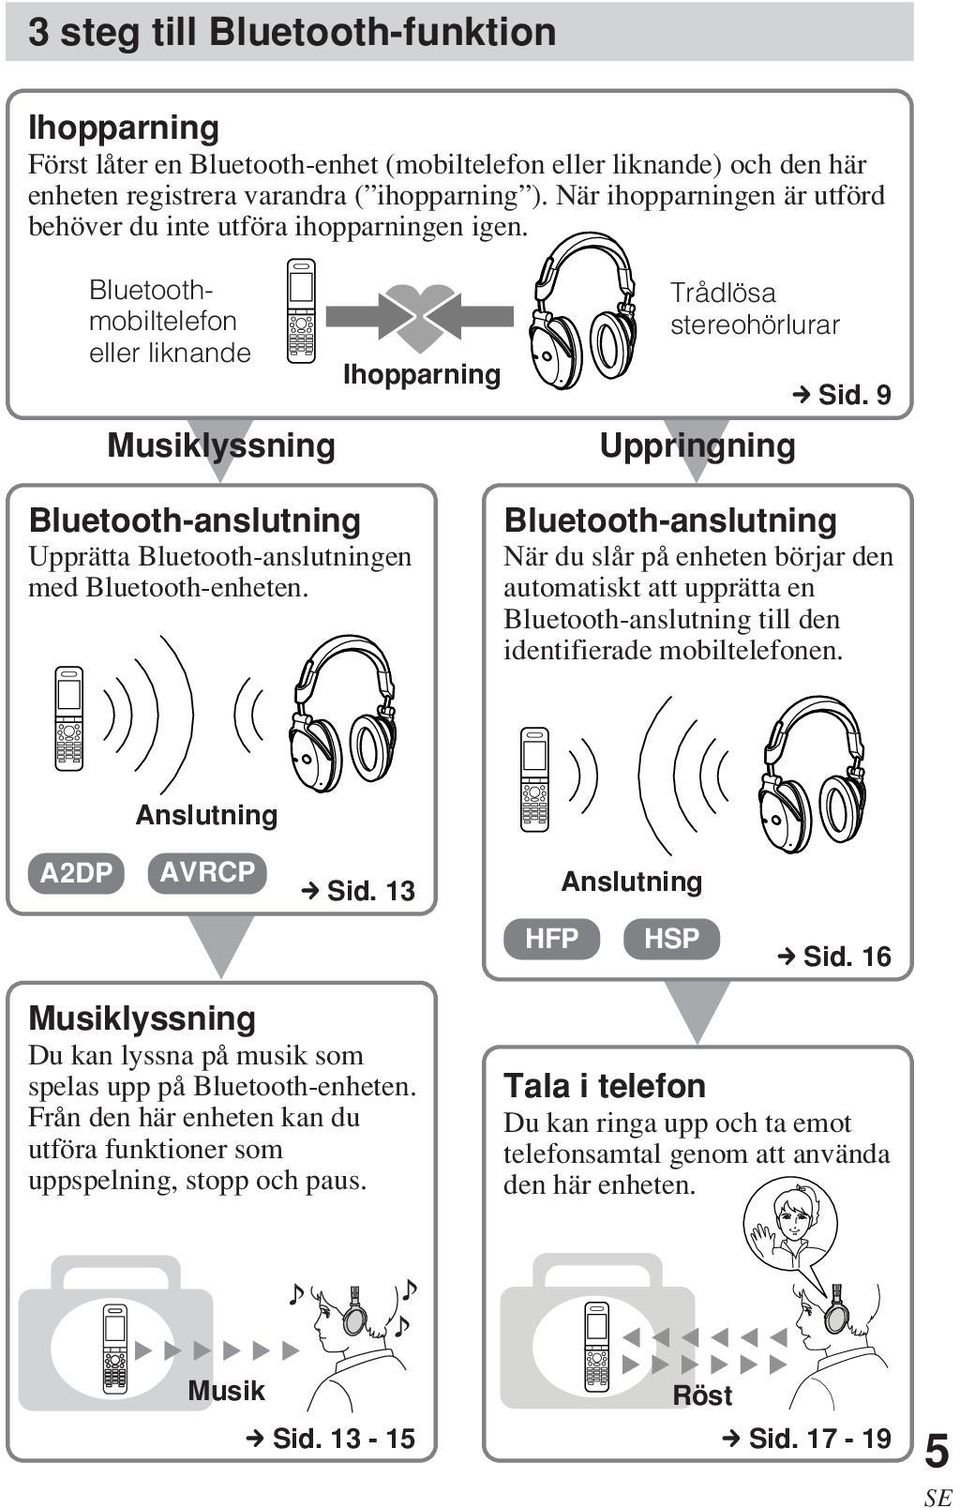 Bluetoothmobiltelefon eller liknande Ihopparning Musiklyssning V Bluetooth-anslutning Upprätta Bluetooth-anslutningen med Bluetooth-enheten. Trådlösa stereohörlurar c Sid.